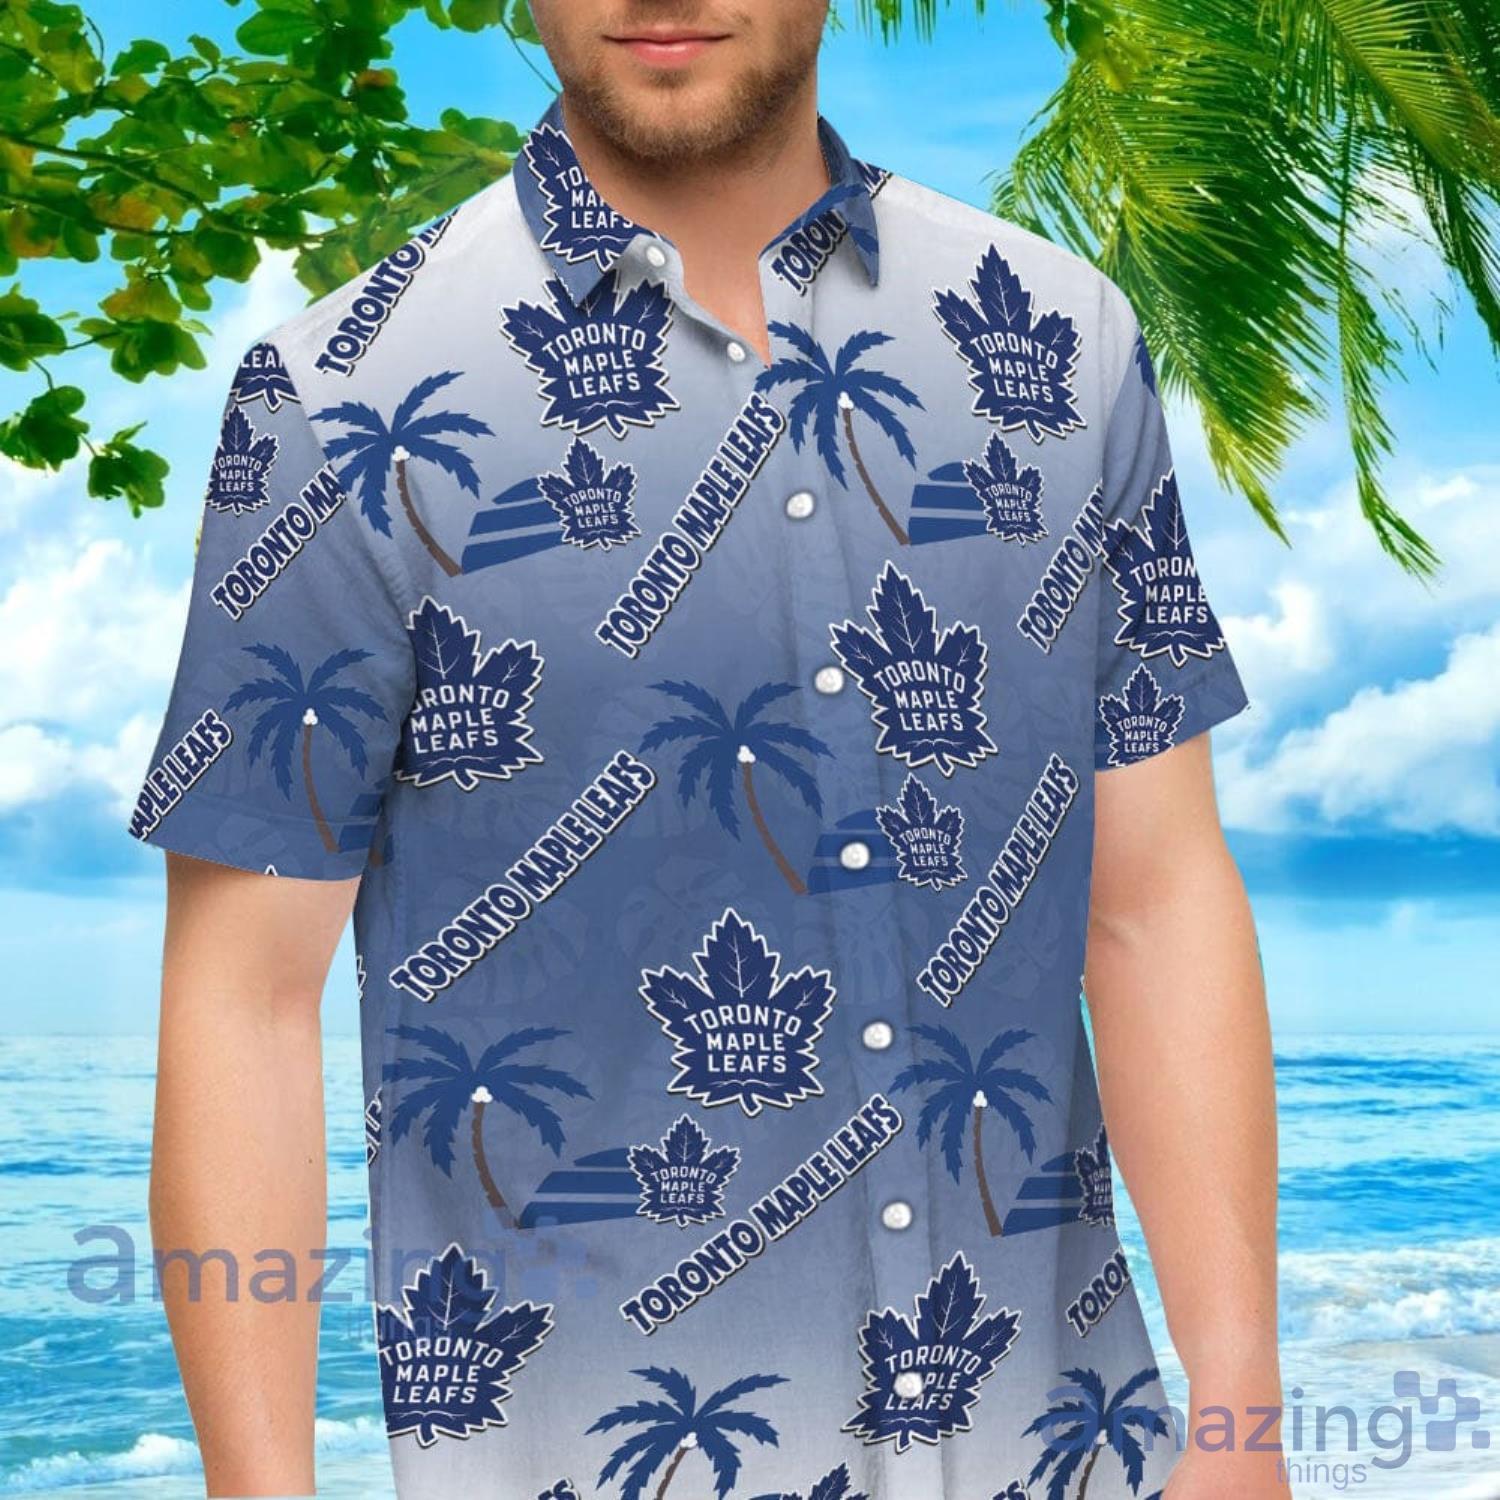 Toronto Maple Leafs Hawaiian shirt